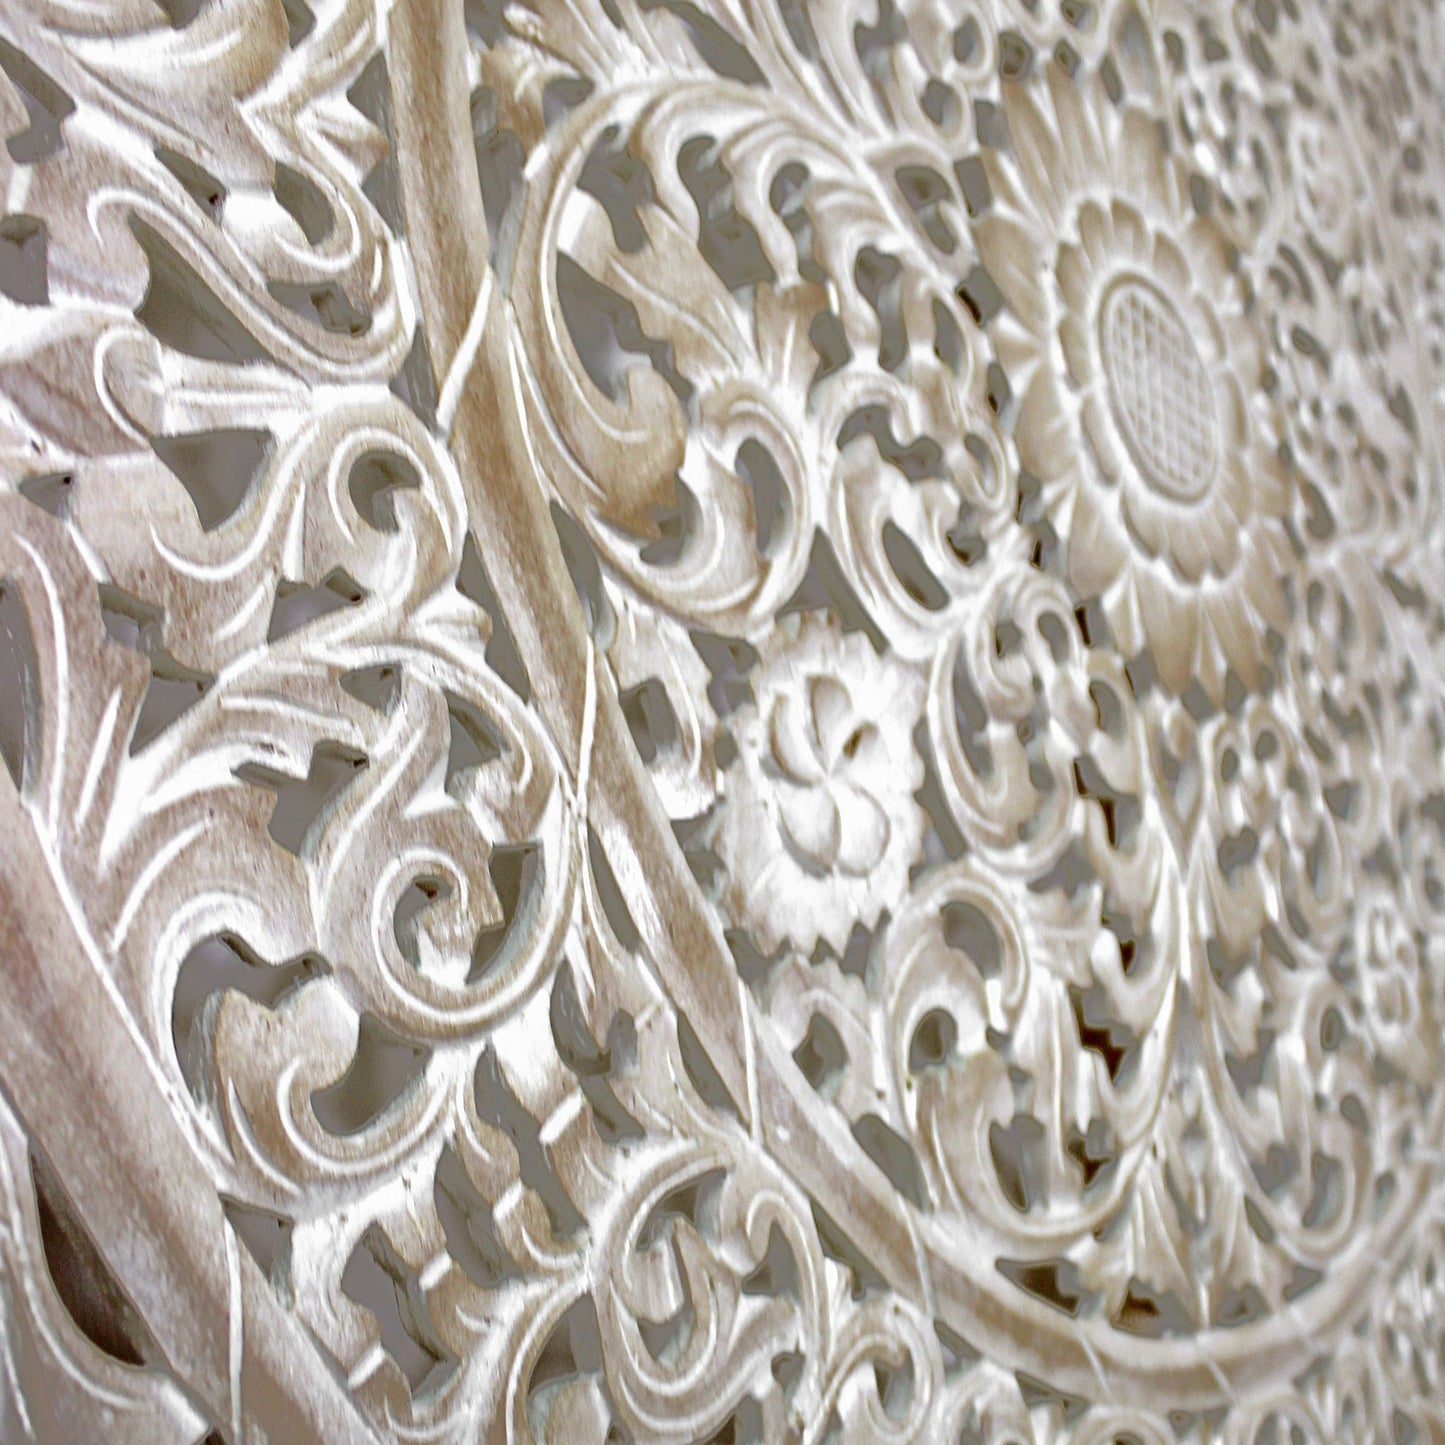 Decorative Panel "Melati" - 100 cm